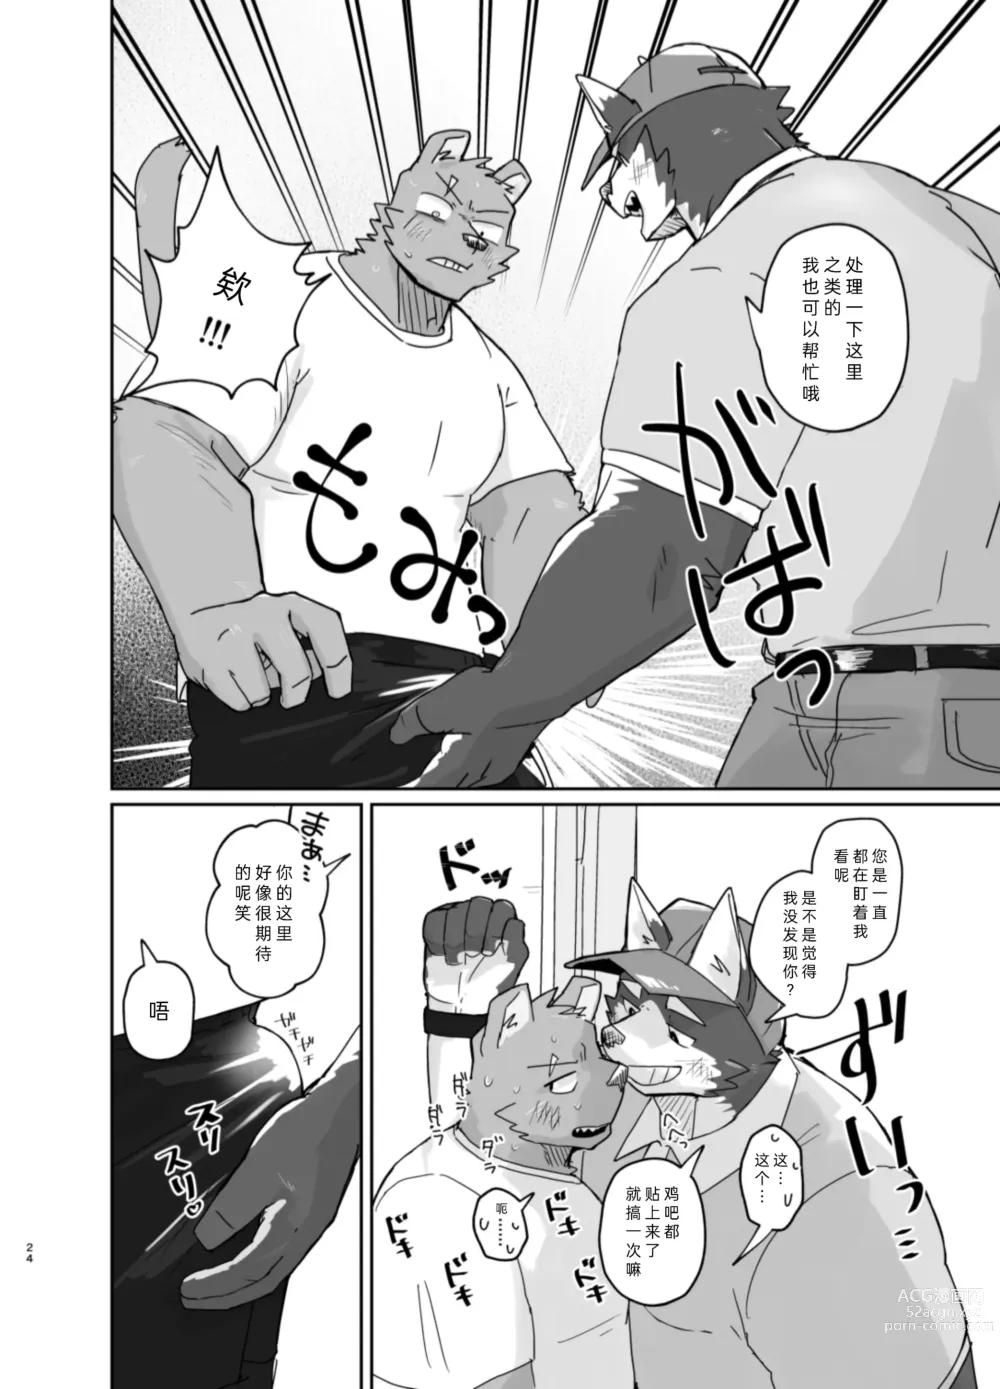 Page 24 of doujinshi 搬家的十分钟服务